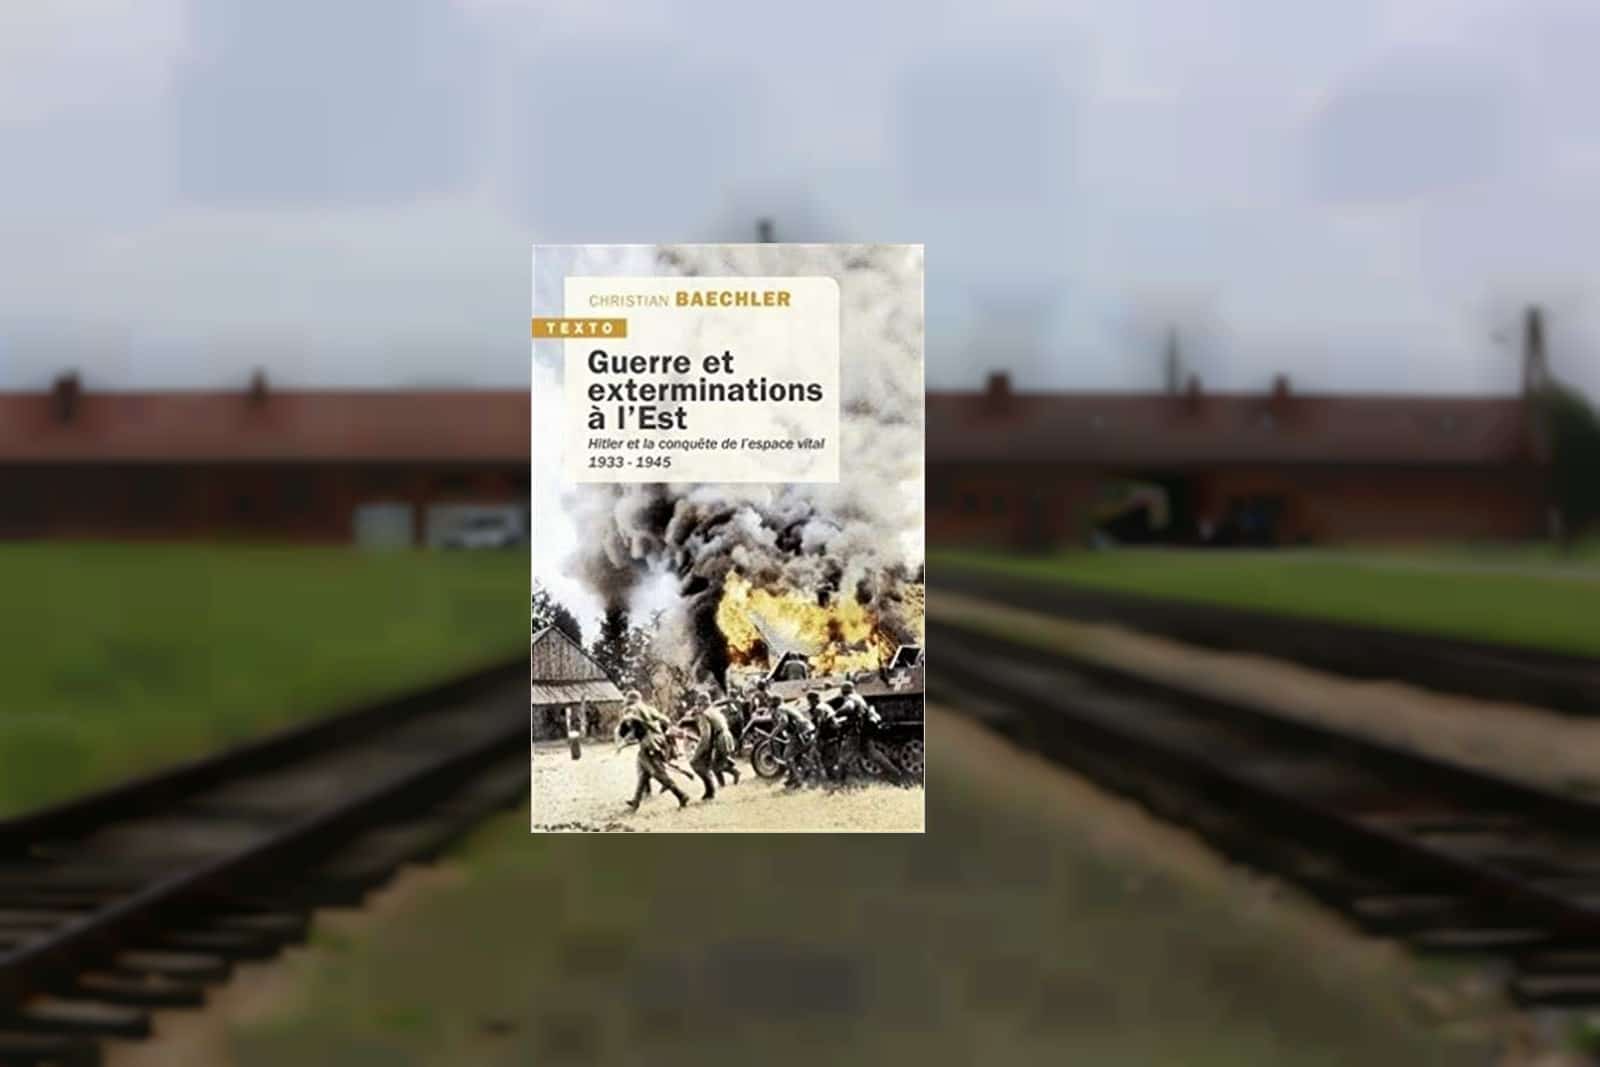 Camp de concentration et d'extermination d'Auschwitz en Pologne,
Auteurs  : Sevgi/SIPA,
Numéro de reportage  : 00821310_000001.